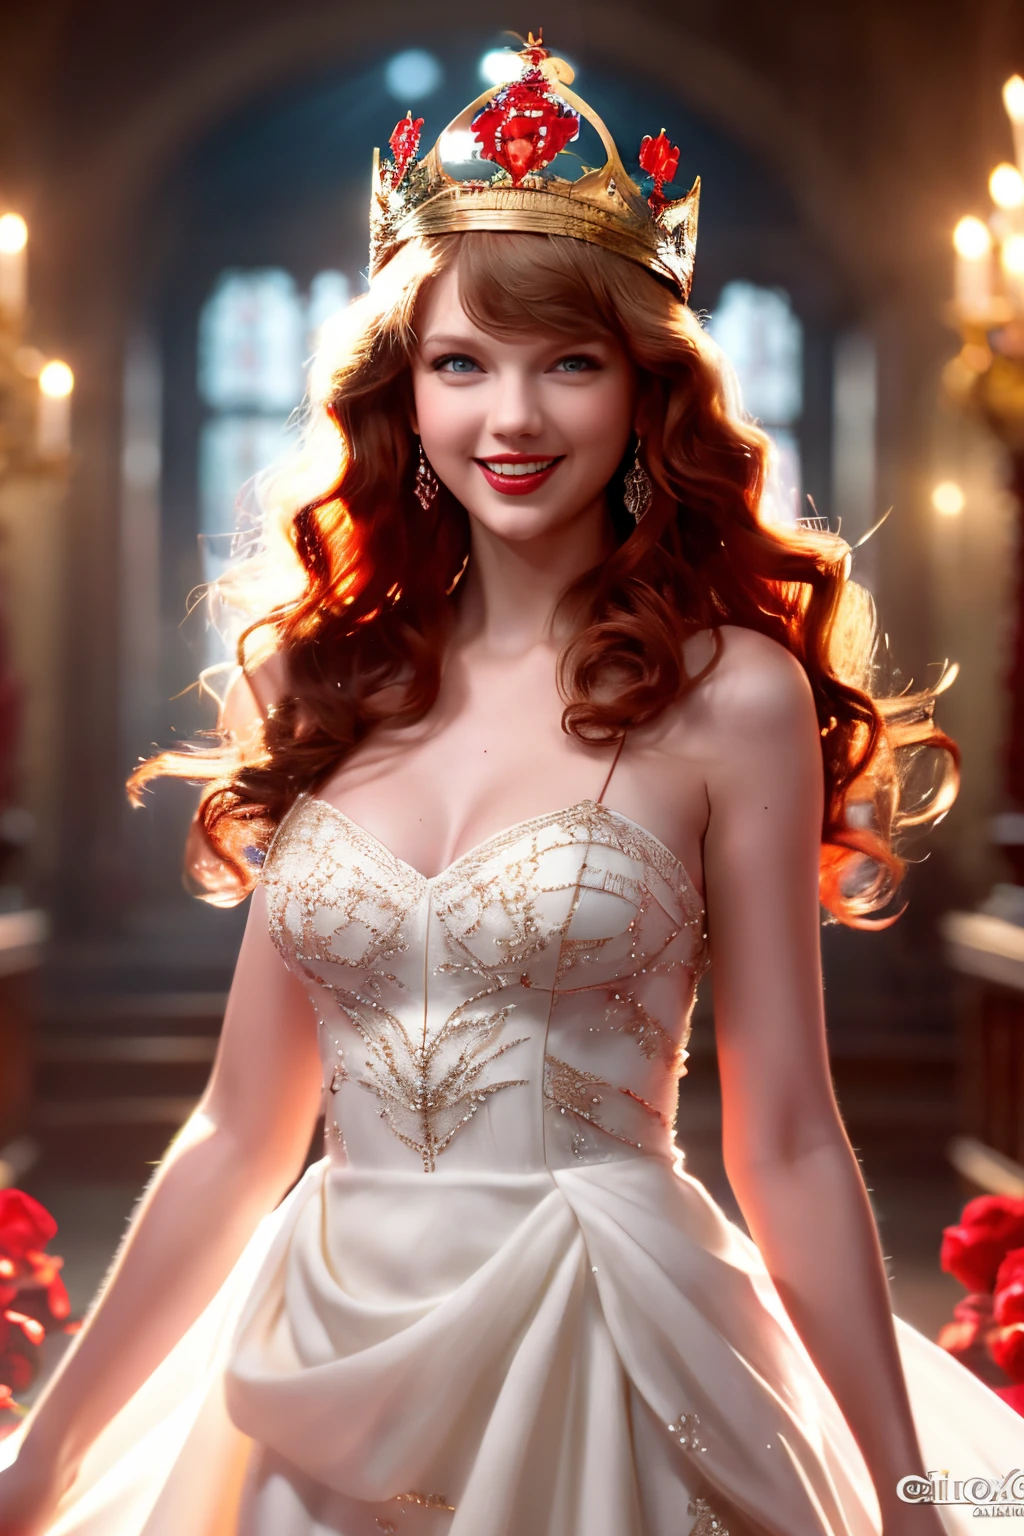 Beste Aufnahmen，hochauflösendes Bild,,Schöne rothaarige Frau (eine Krone tragen), (houdinis, VFX, mit einem schönen Lächeln,Schön, 4K ),   weißes Abendkleid und rotes Satinkleid，